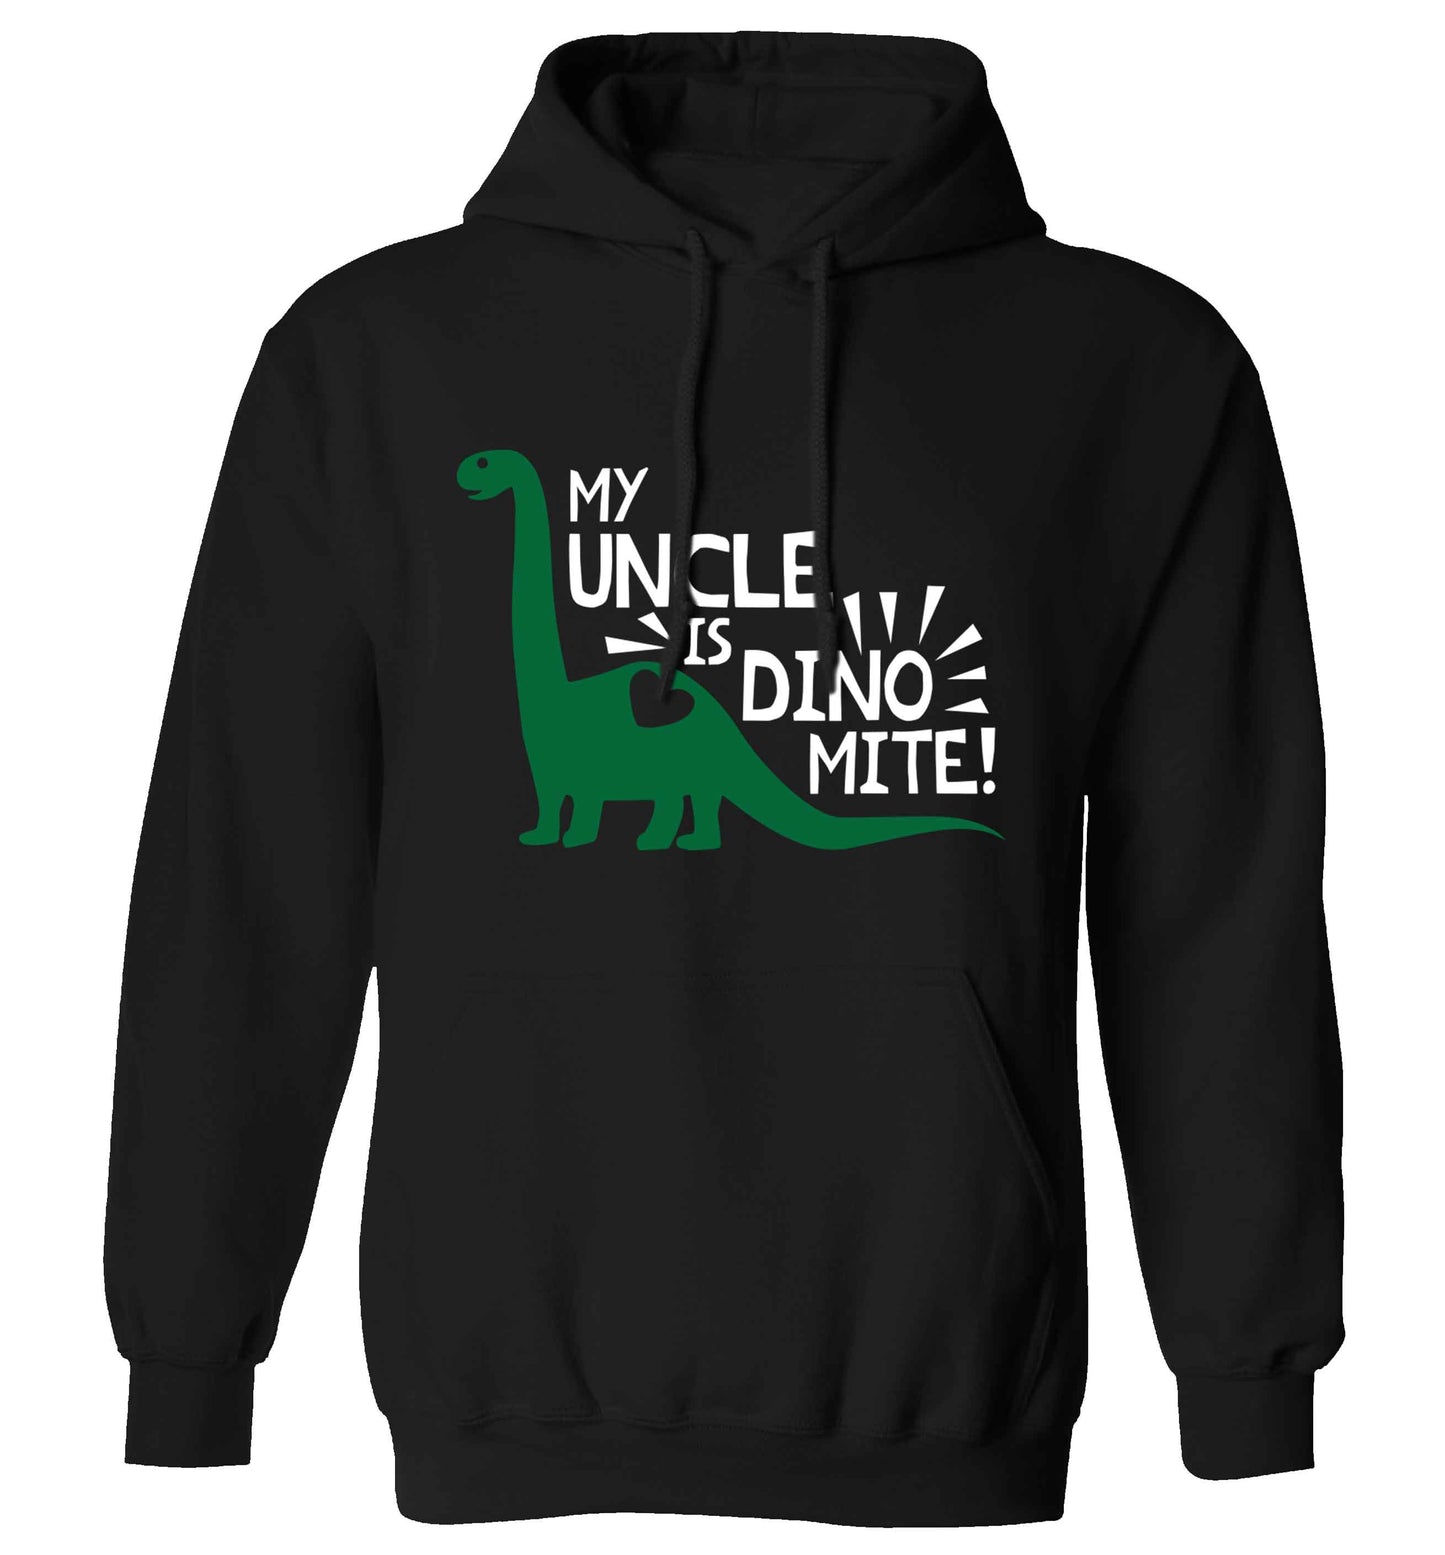 My uncle is dinomite! adults unisex black hoodie 2XL